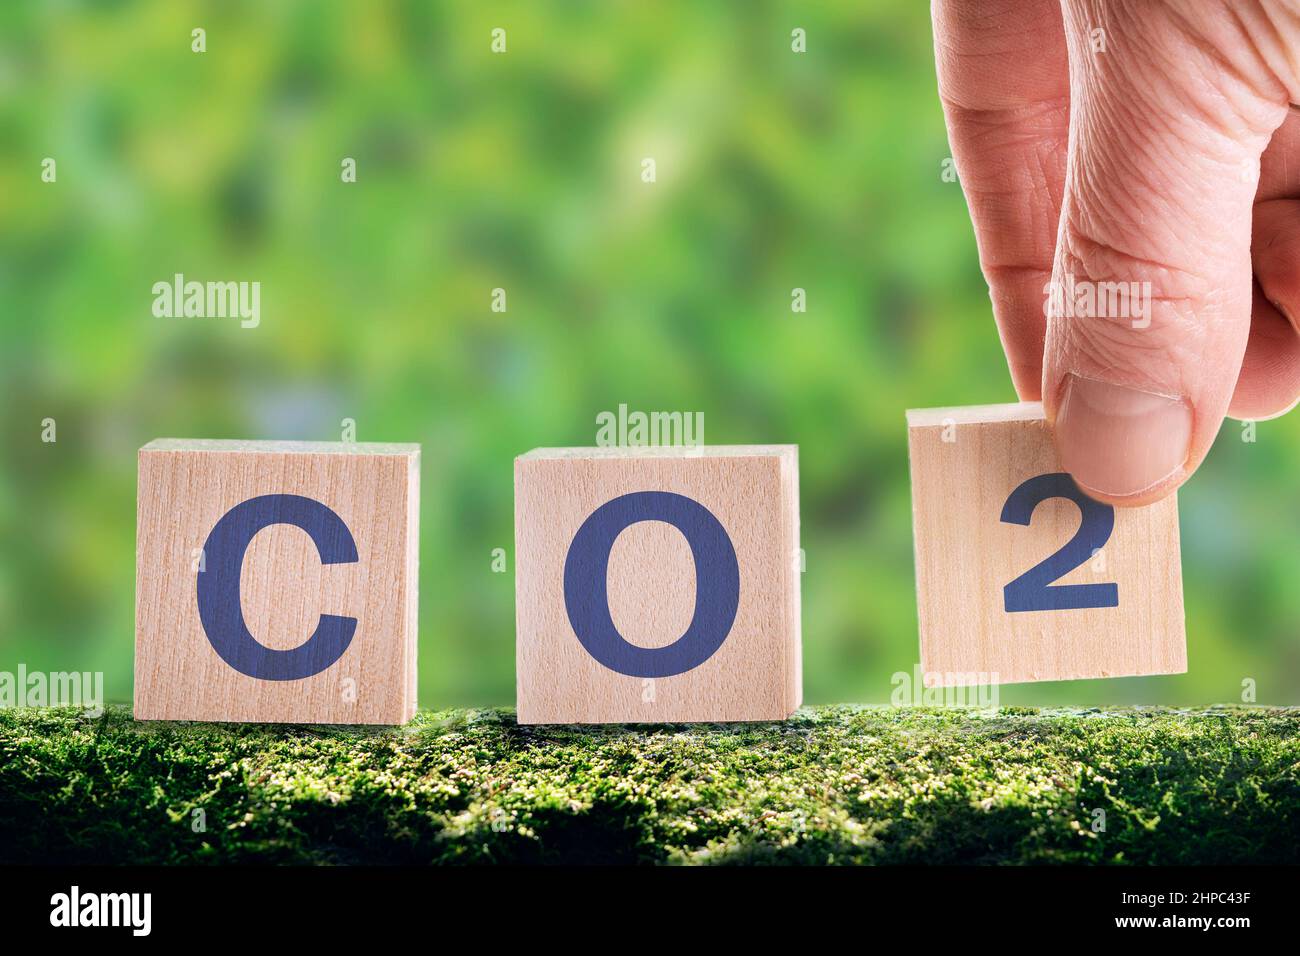 CO2 cubi su sfondo verde, il concetto di risparmio energetico e riduzione delle emissioni. Ridurre le emissioni del CO2 per limitare il riscaldamento globale e il cambiamento climatico. Foto Stock